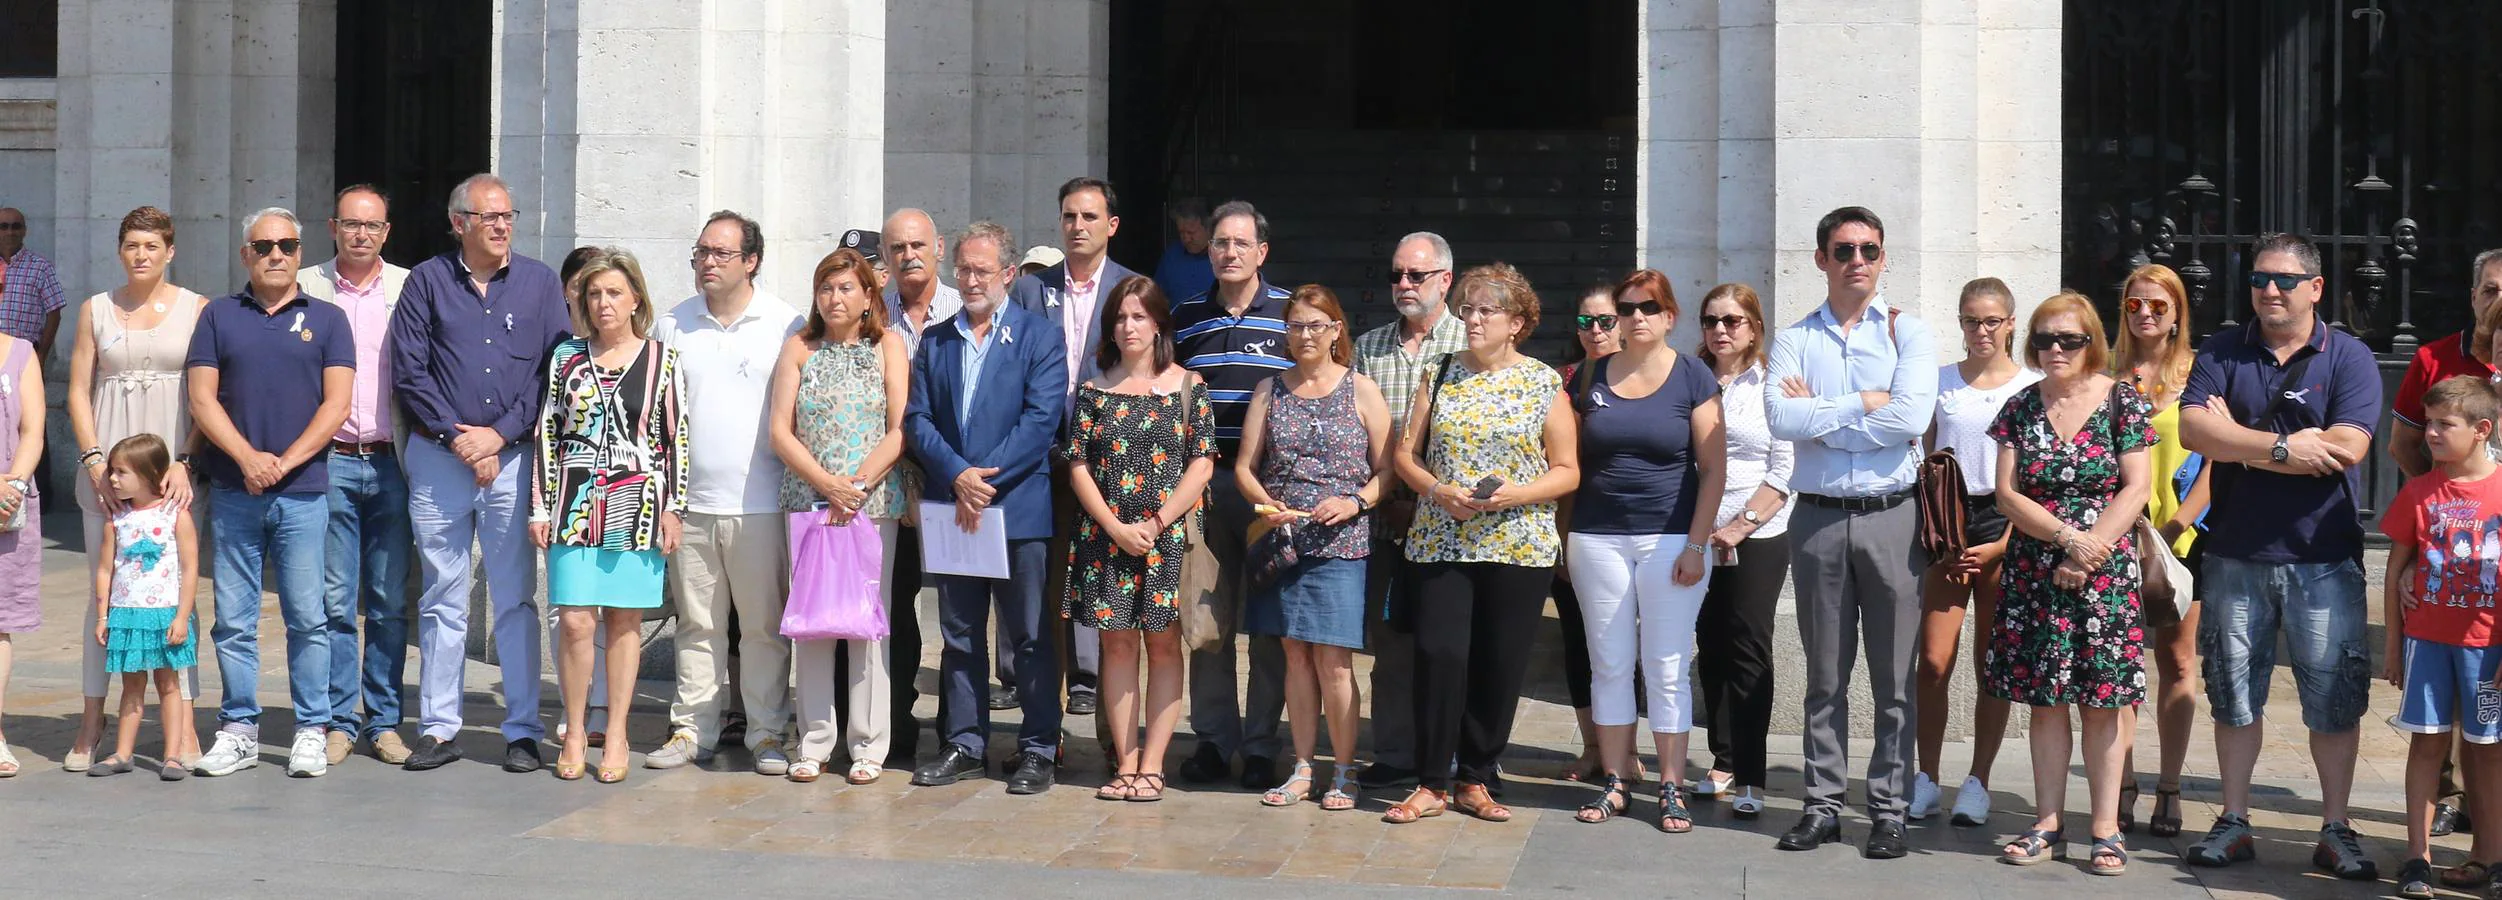 Minuto de silencio en Valladolid y en Pedrajas de San Esteban por la niña asesinada